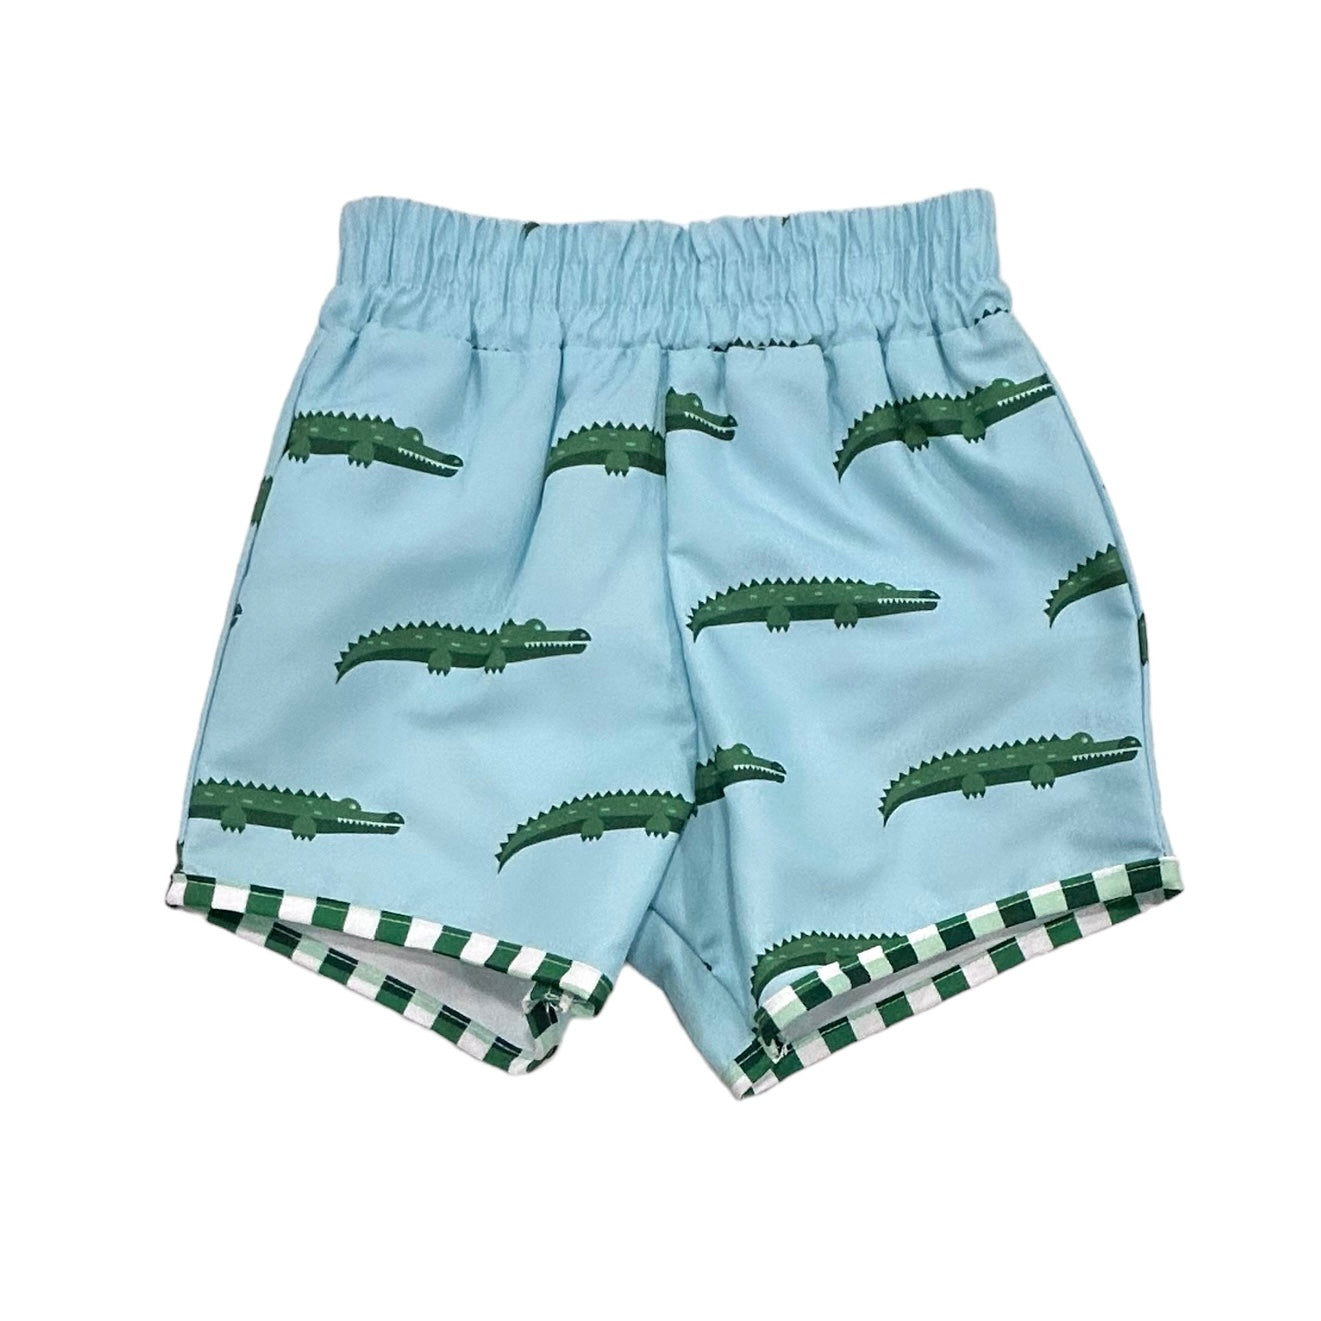 Toddler Boys Size 2T Swim Shorts Swim Trunks with Crocodiles Blue